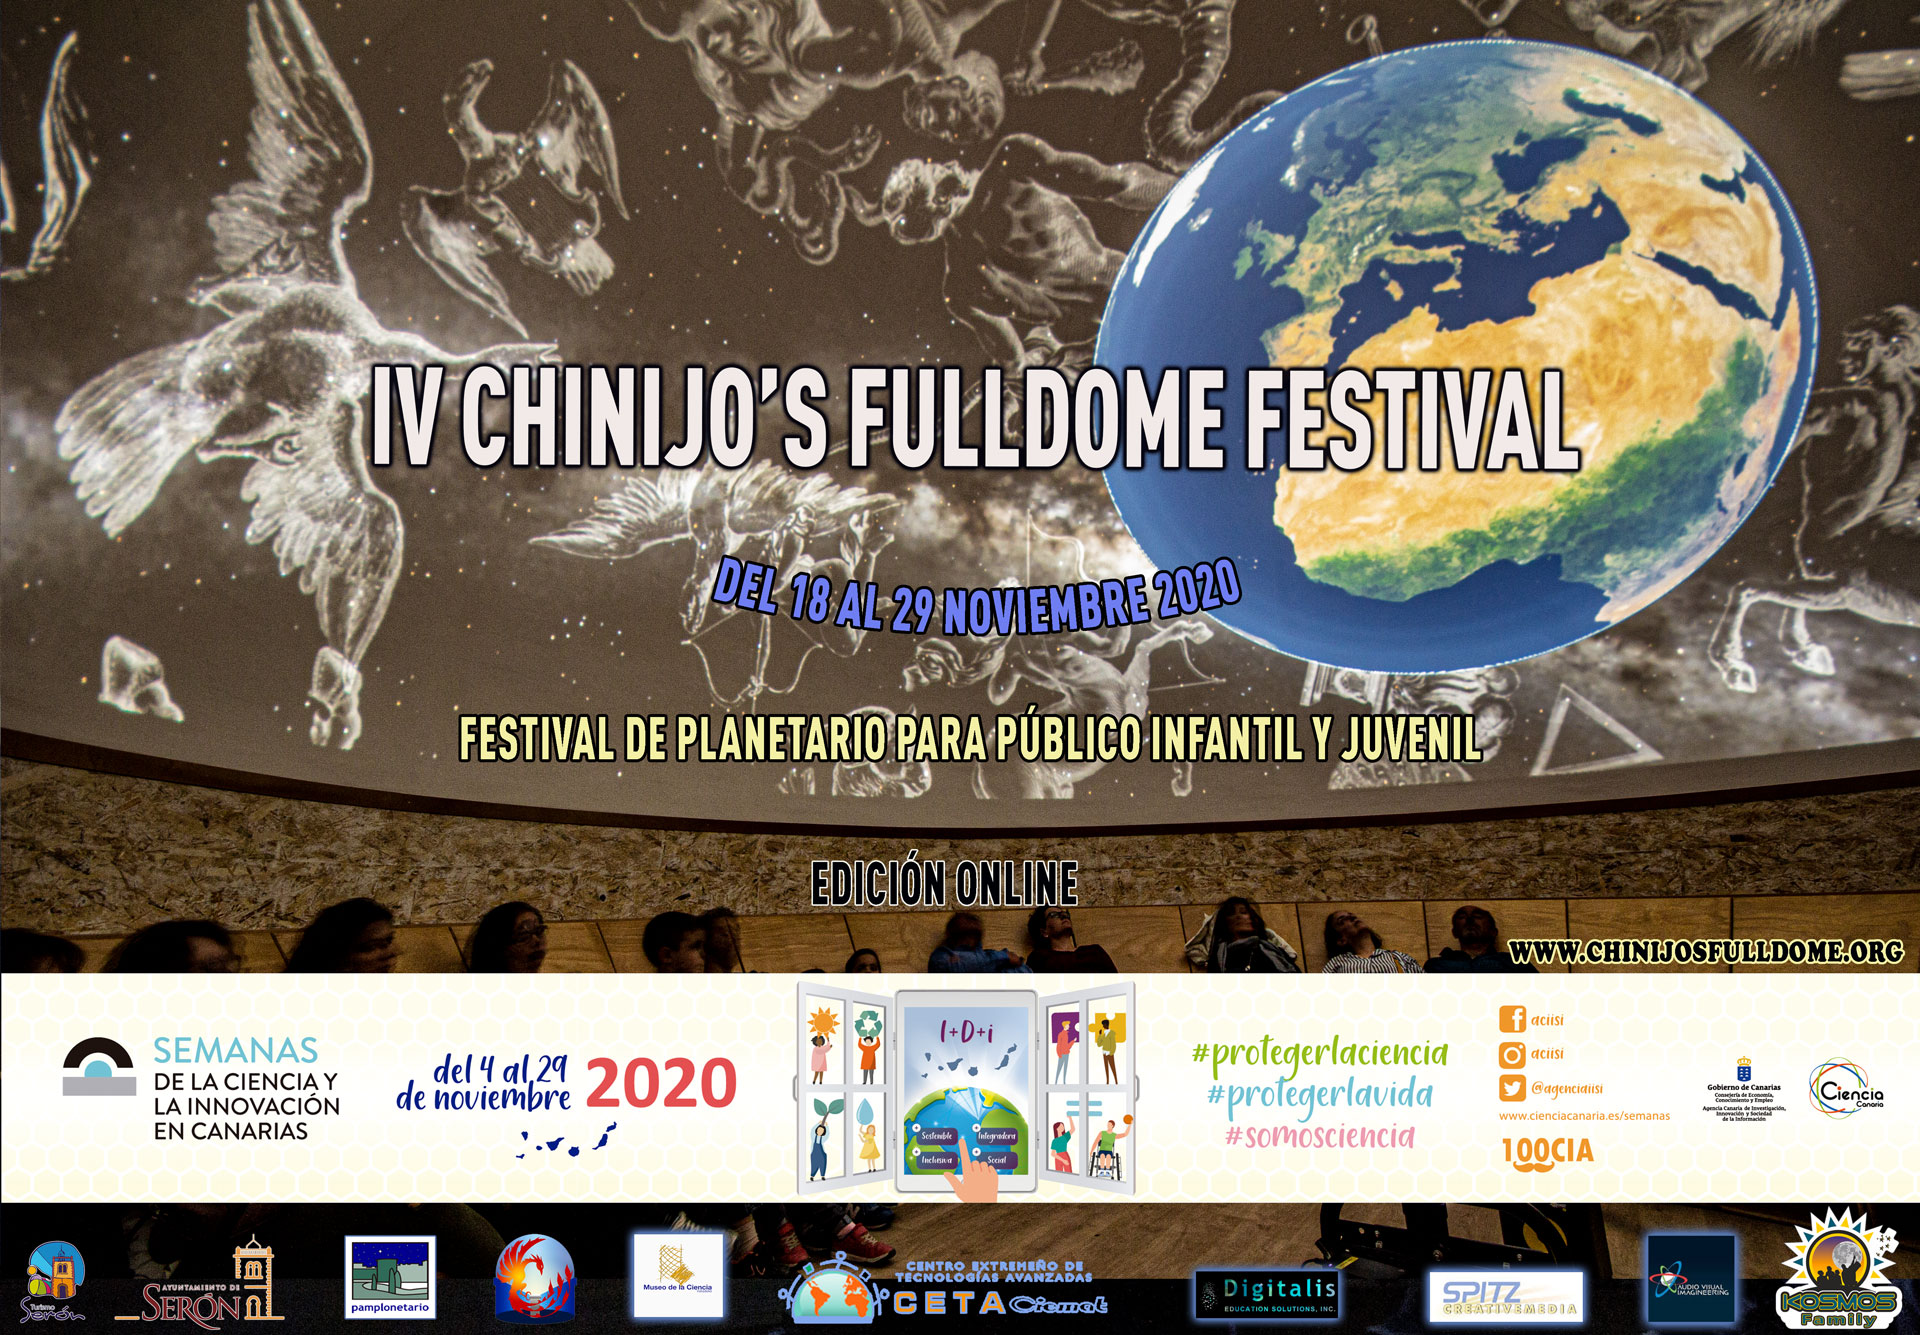 Chinijo's Fulldome Festival